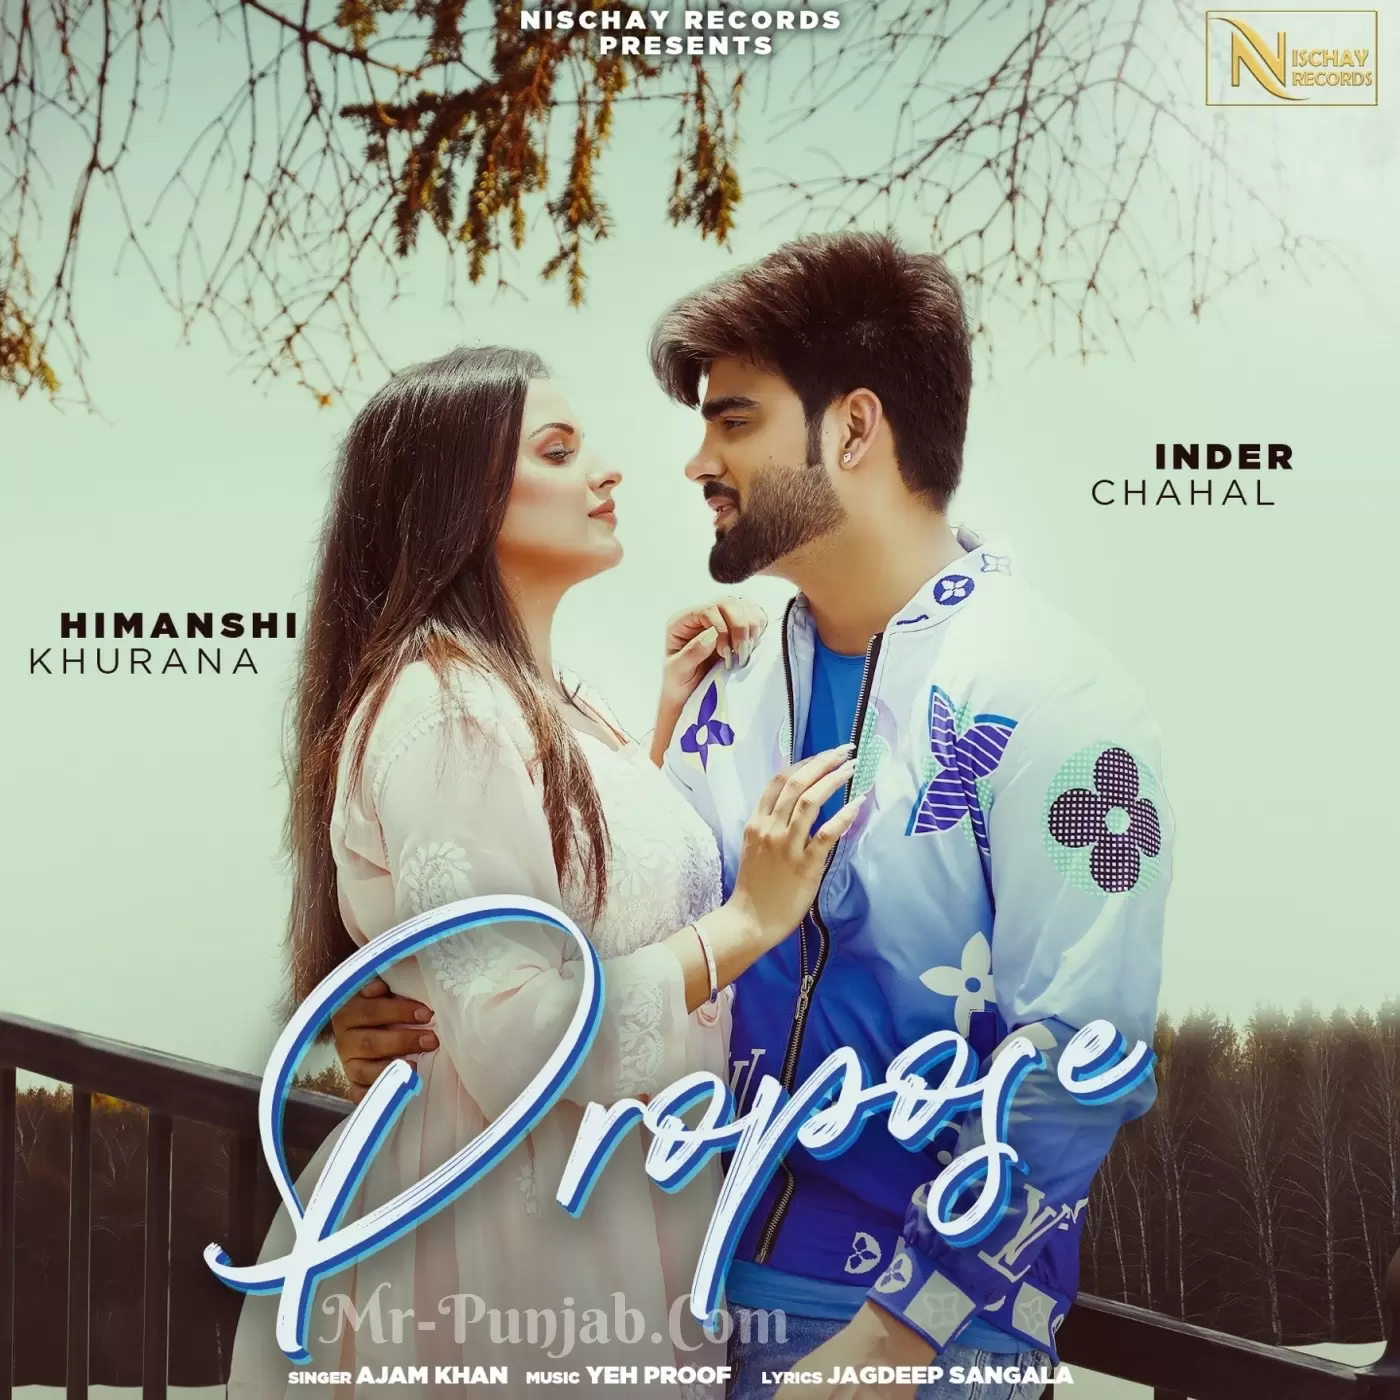 Propose Ajam Khan Mp3 Download Song - Mr-Punjab